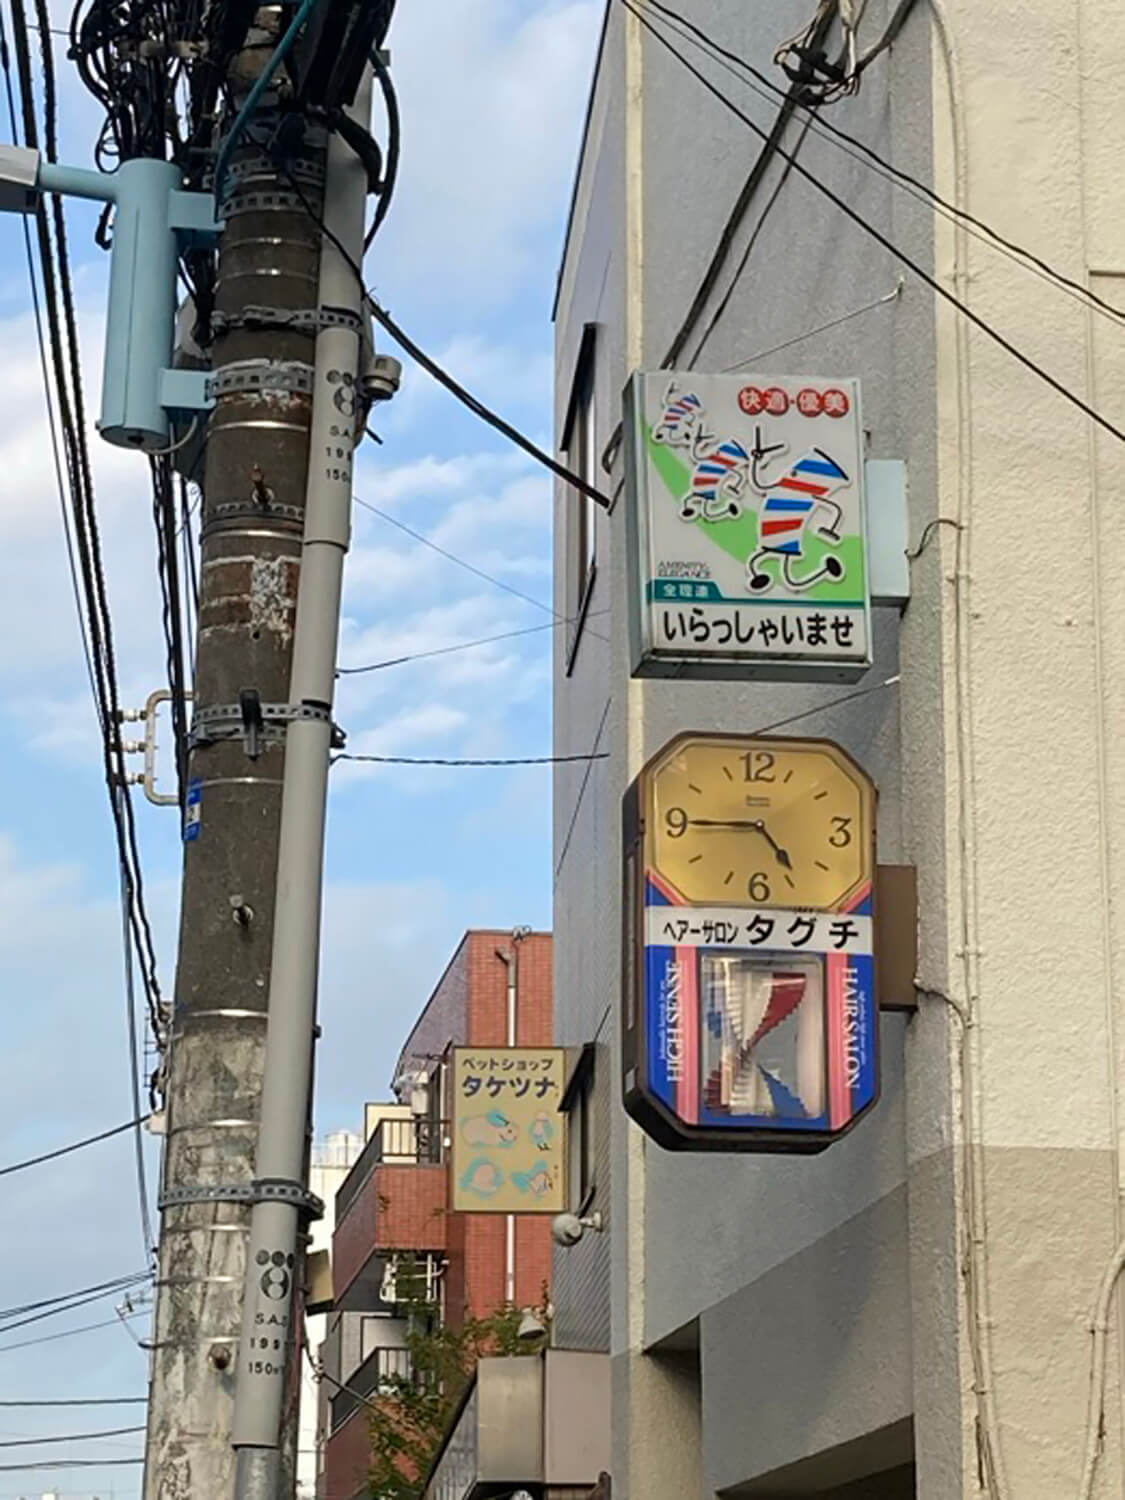 芦花公園の理髪店の時計。この形は割とよく見かける。